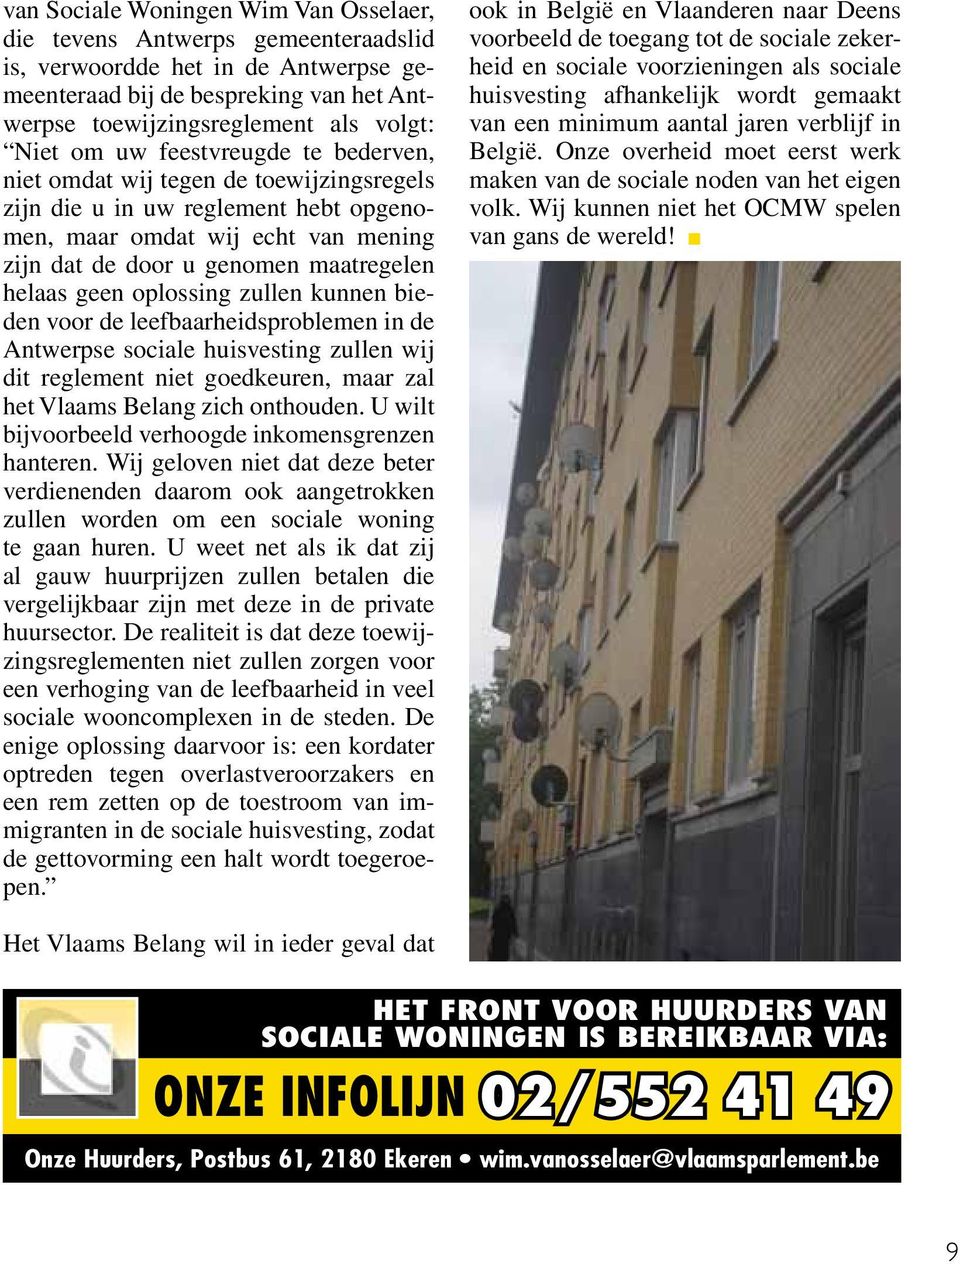 oplossing zullen kunnen bieden voor de leefbaarheidsproblemen in de Antwerpse sociale huisvesting zullen wij dit reglement niet goedkeuren, maar zal het Vlaams Belang zich onthouden.